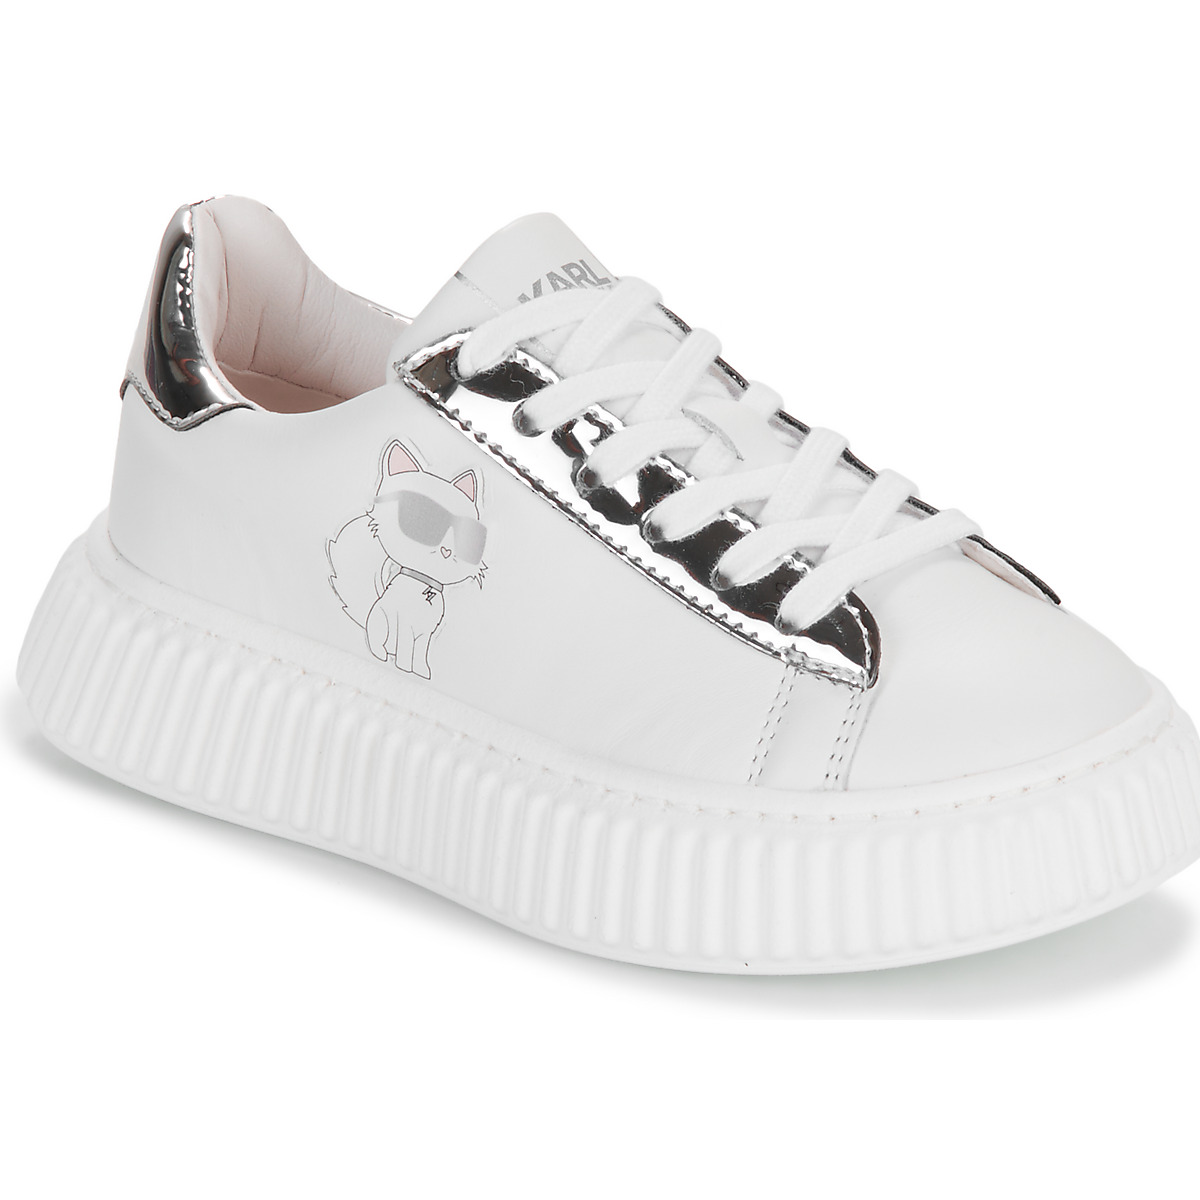 Sapatos Rapariga Sapatilhas Karl Lagerfeld KARL'S VARSITY KLUB Branco